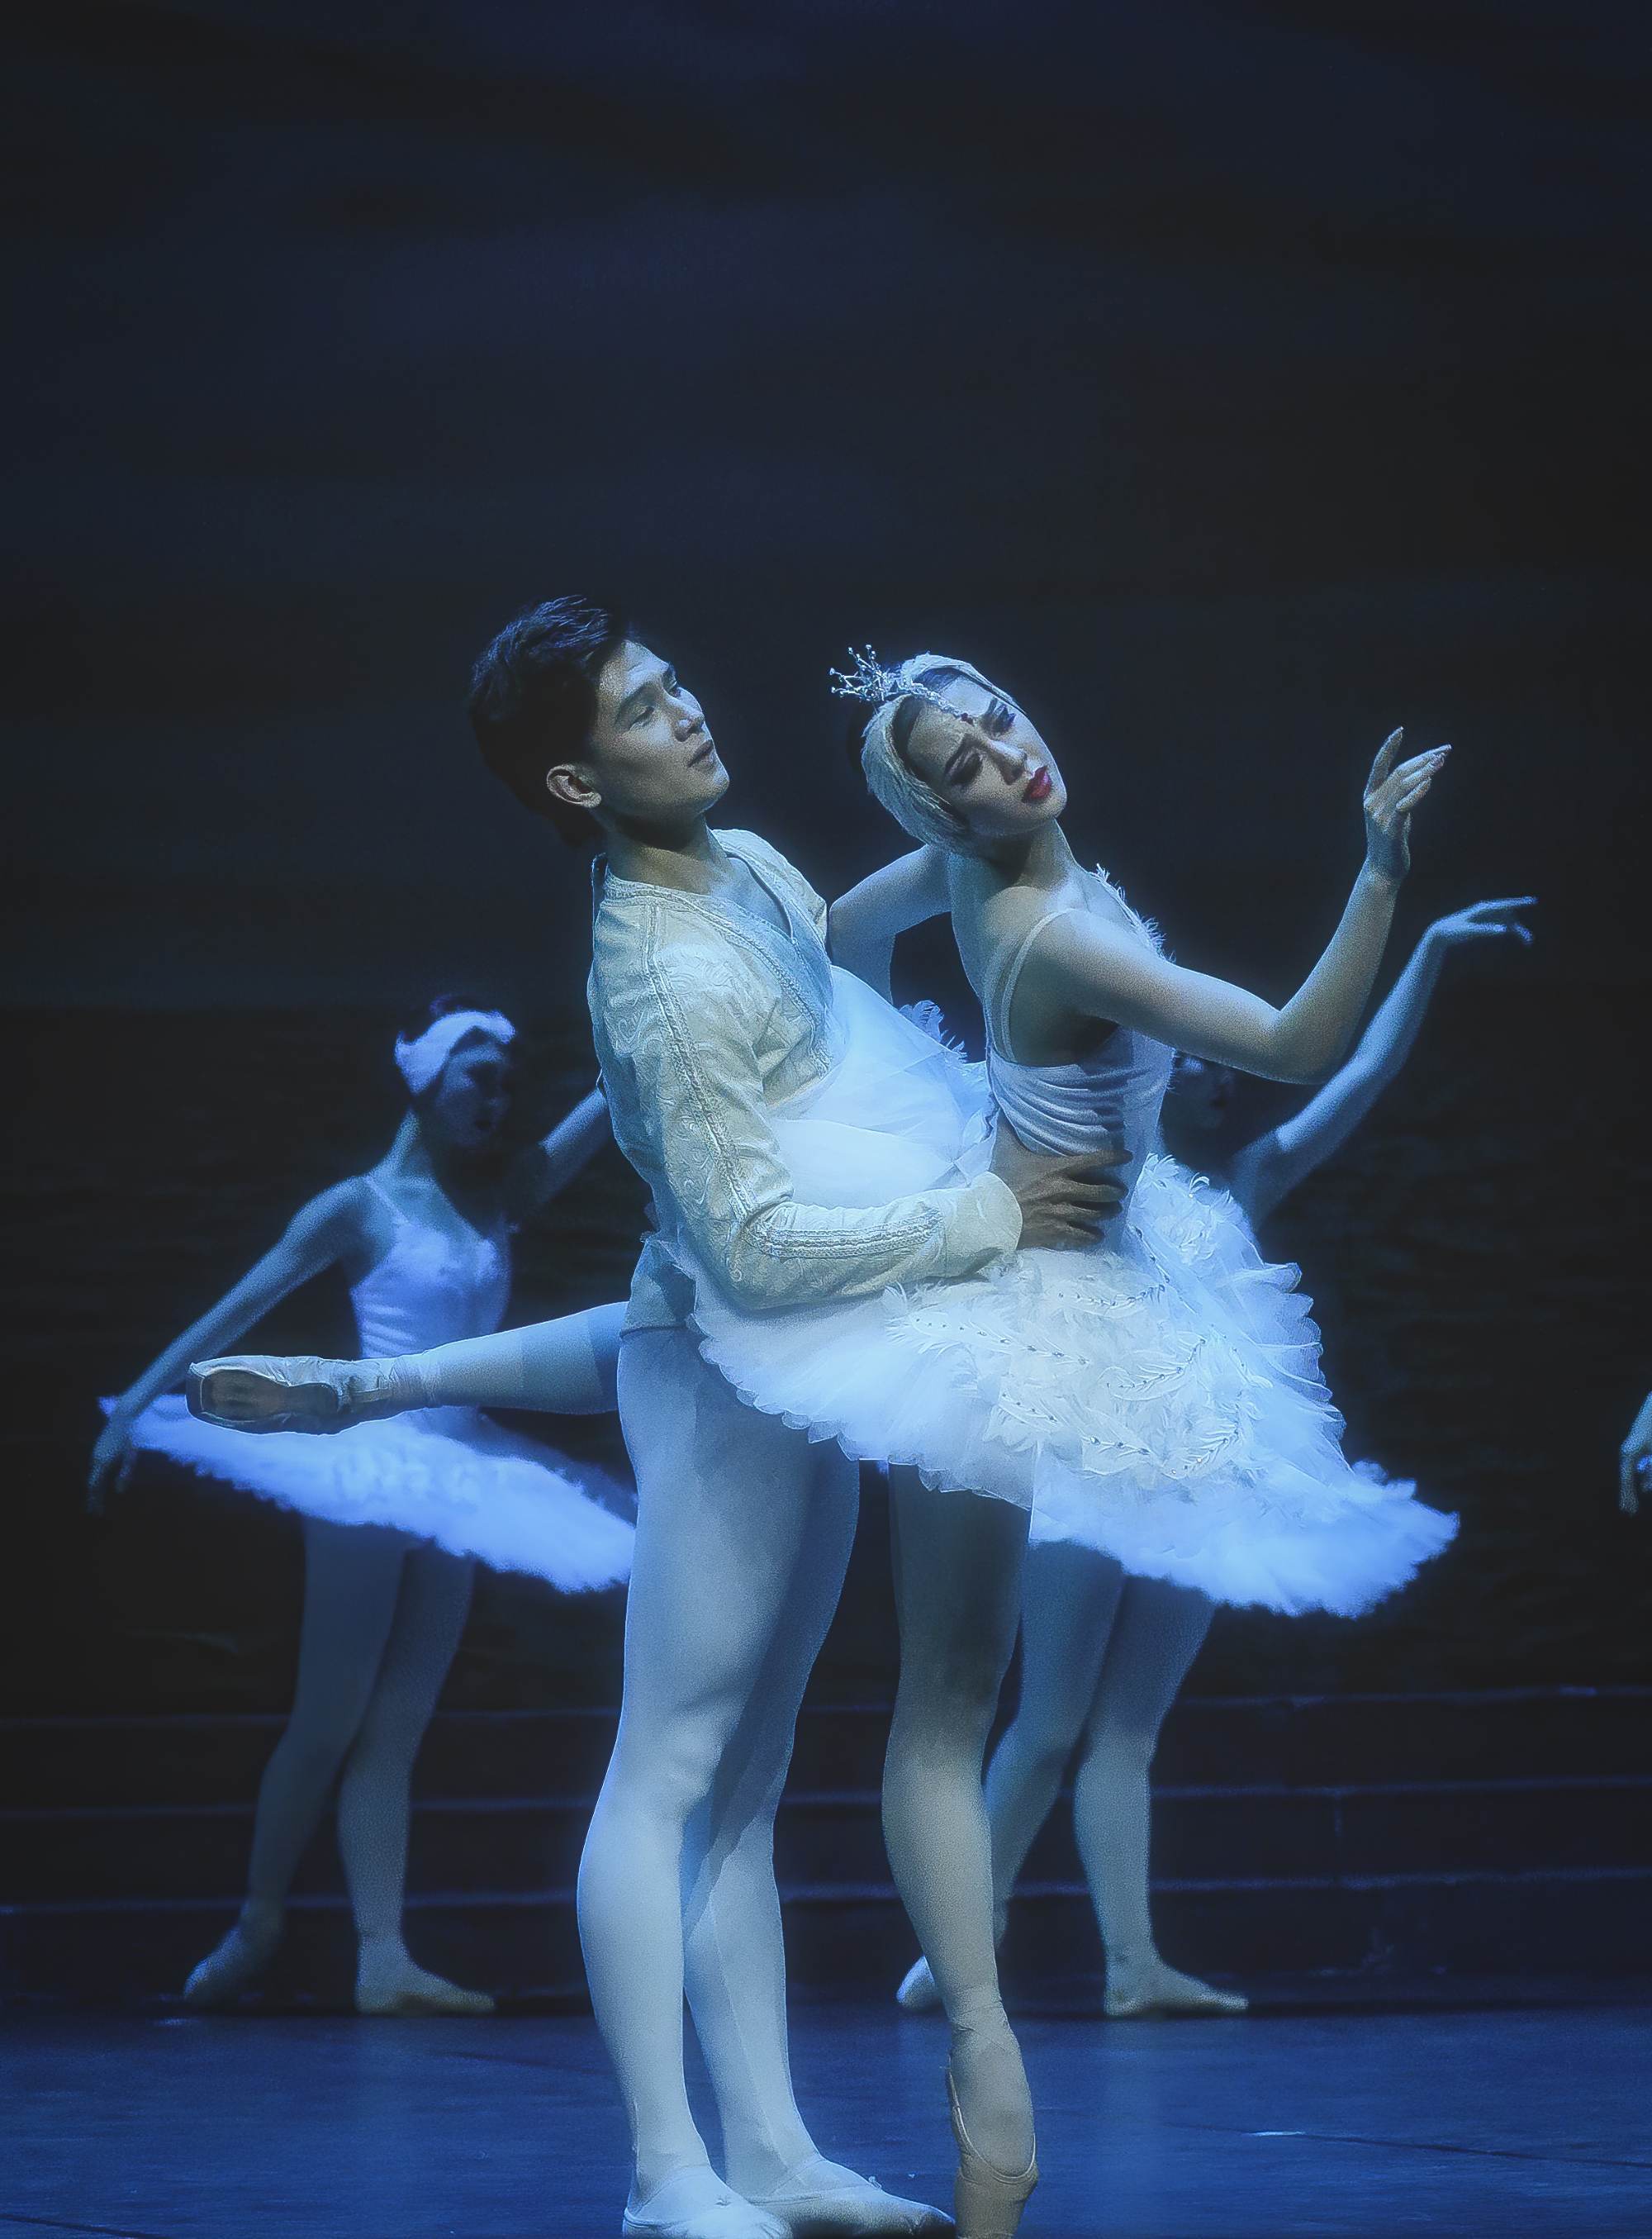 丹麦皇家芭蕾舞团女神做客天天向上是第几期_见证奇迹的时刻川普赢了_小男孩穿公主裙白裤袜